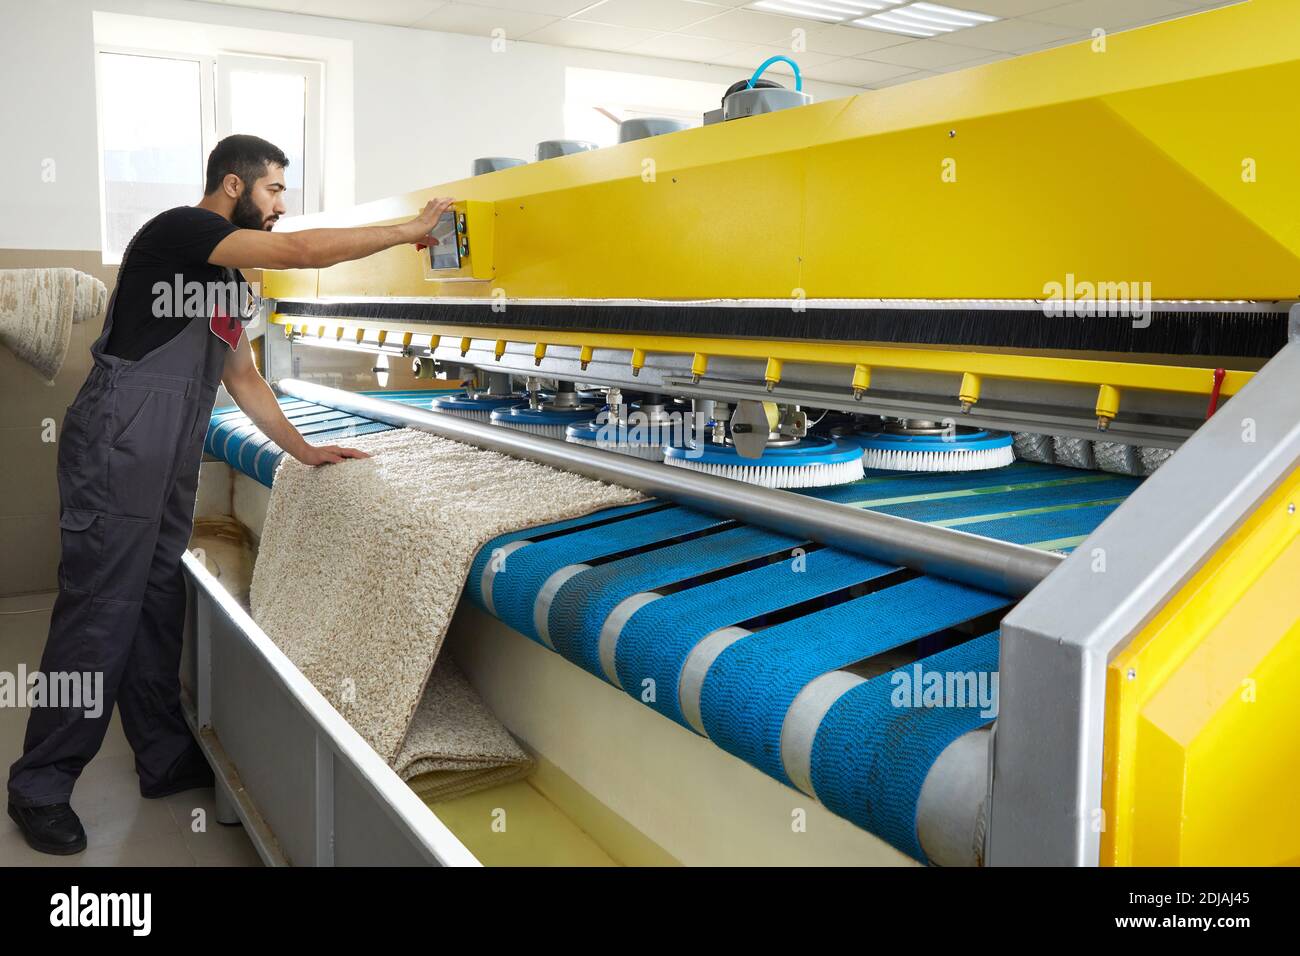 Mann, der Teppich automatische Waschmaschine in professionellen  Wäschereiservice Stockfotografie - Alamy